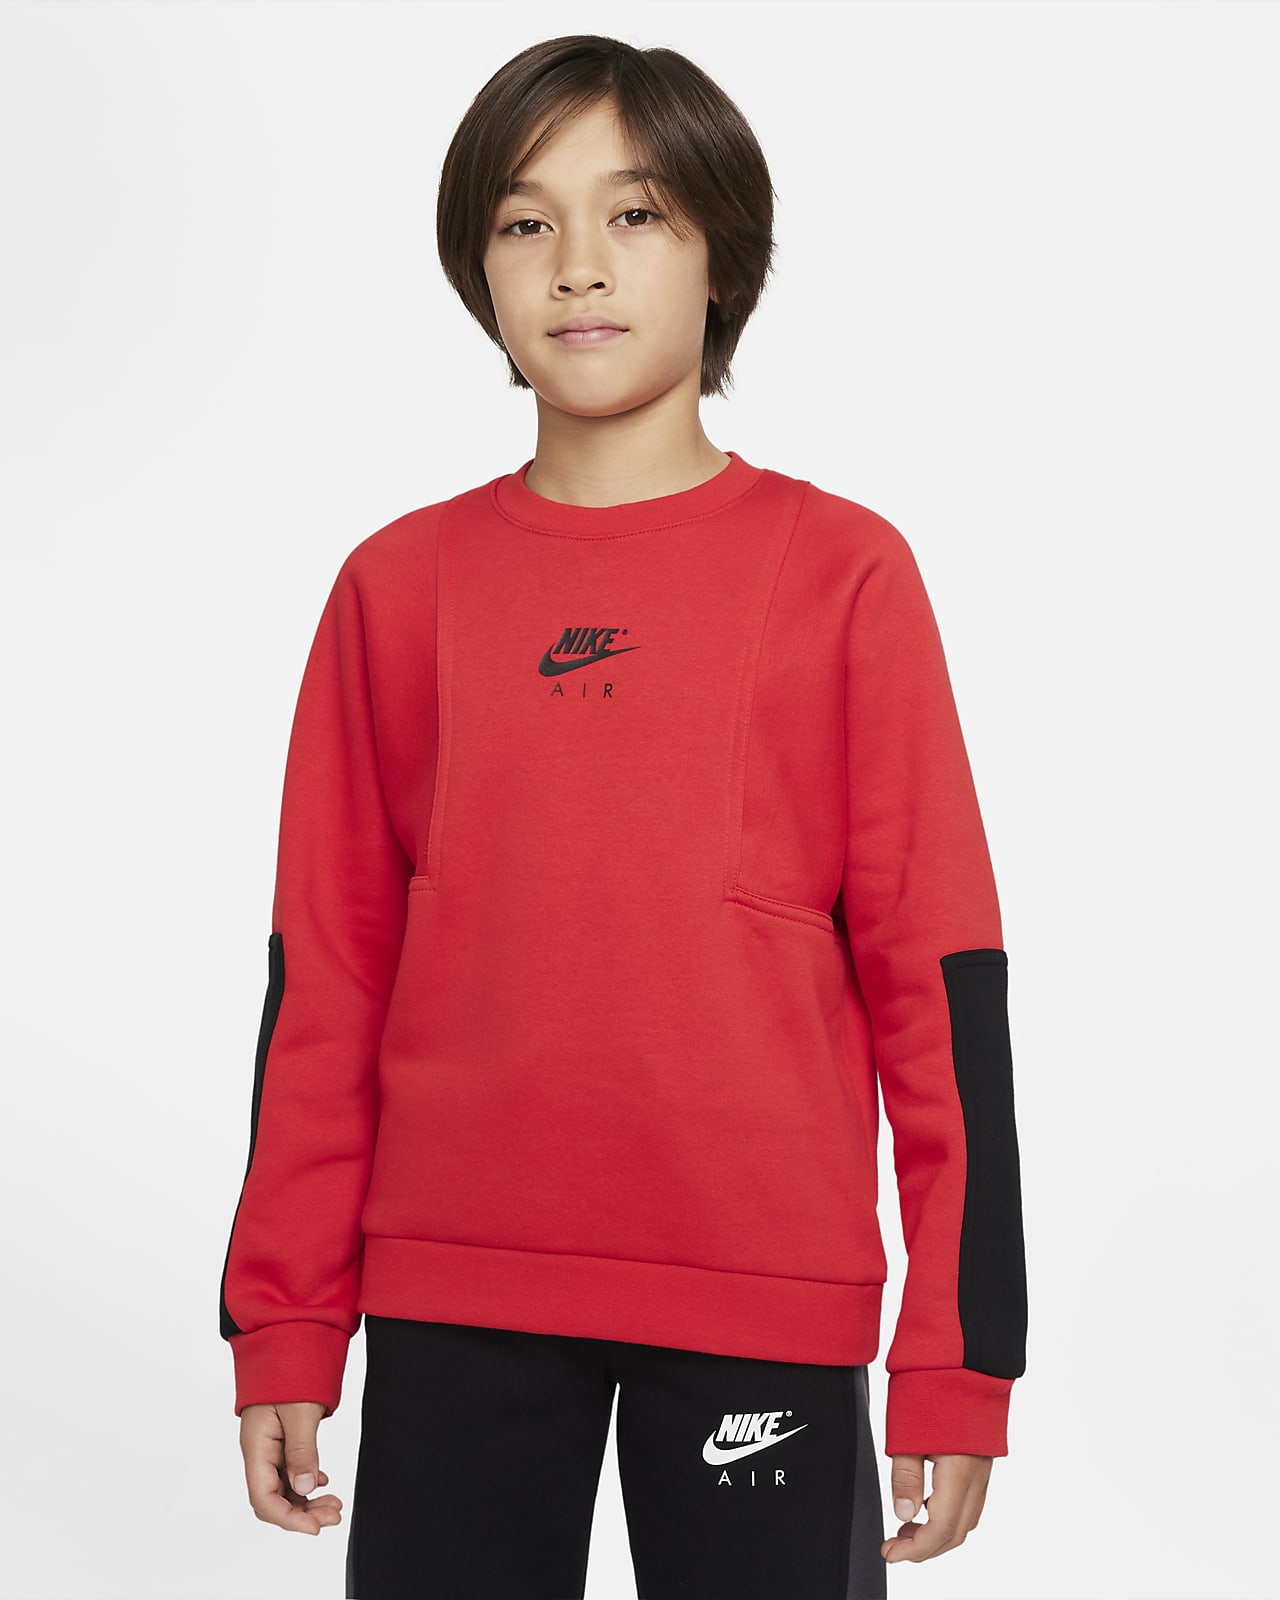 Dominant Aankoop Absorberend Nike Air Big Kids' (Boys') Sweatshirt. Nike.com